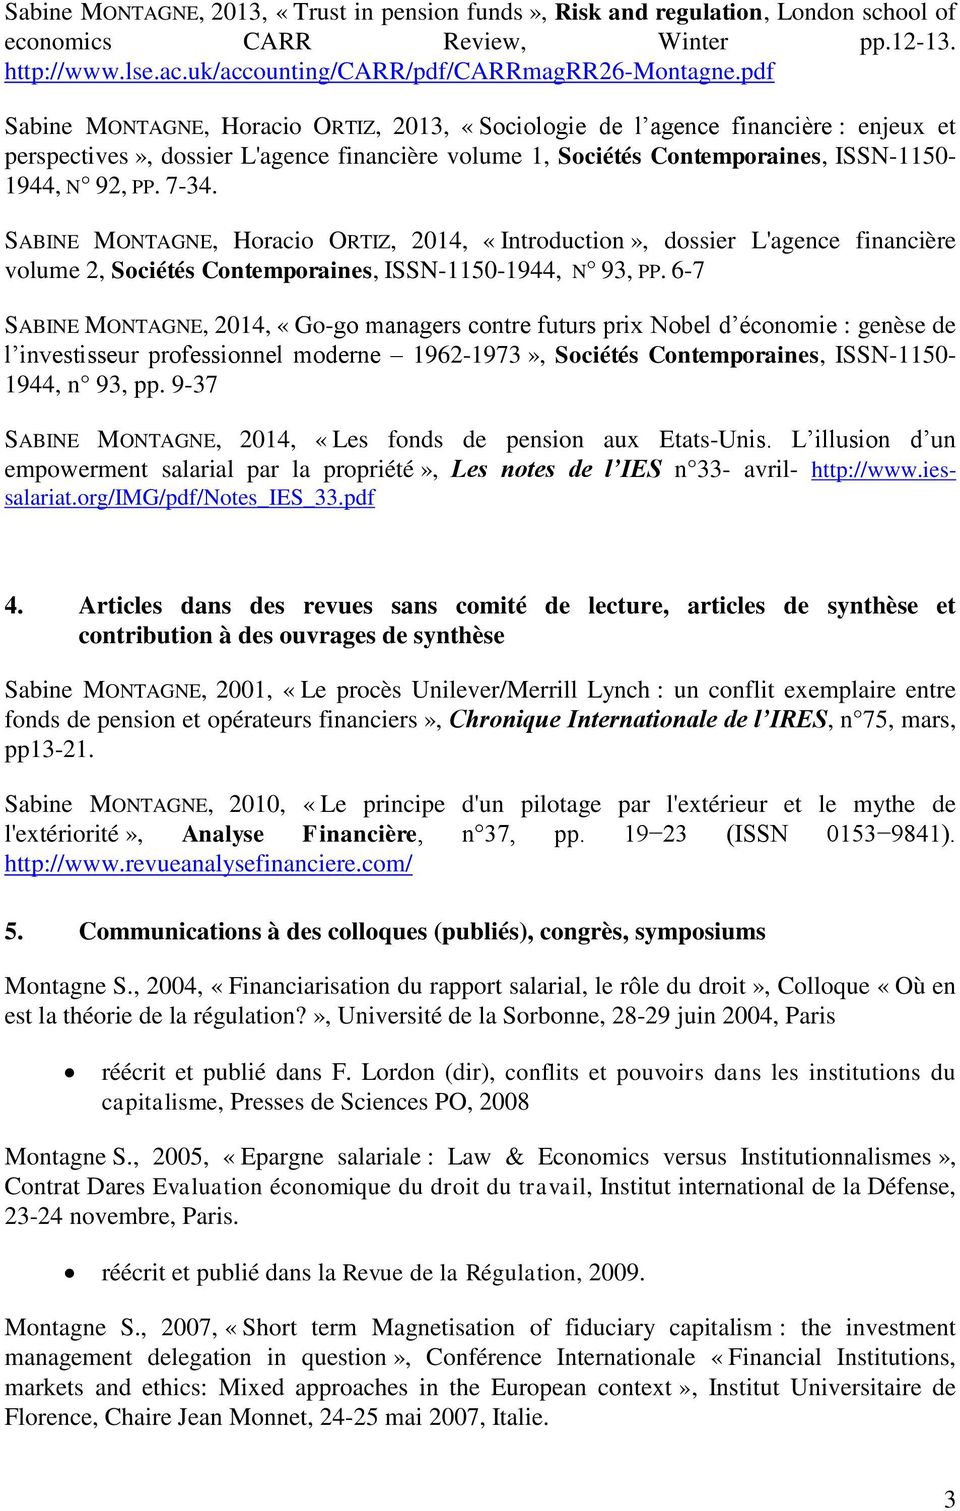 SABINE MONTAGNE, Horacio ORTIZ, 2014, «Introduction», dossier L'agence financière volume 2, Sociétés Contemporaines, ISSN-1150-1944, N 93, PP.